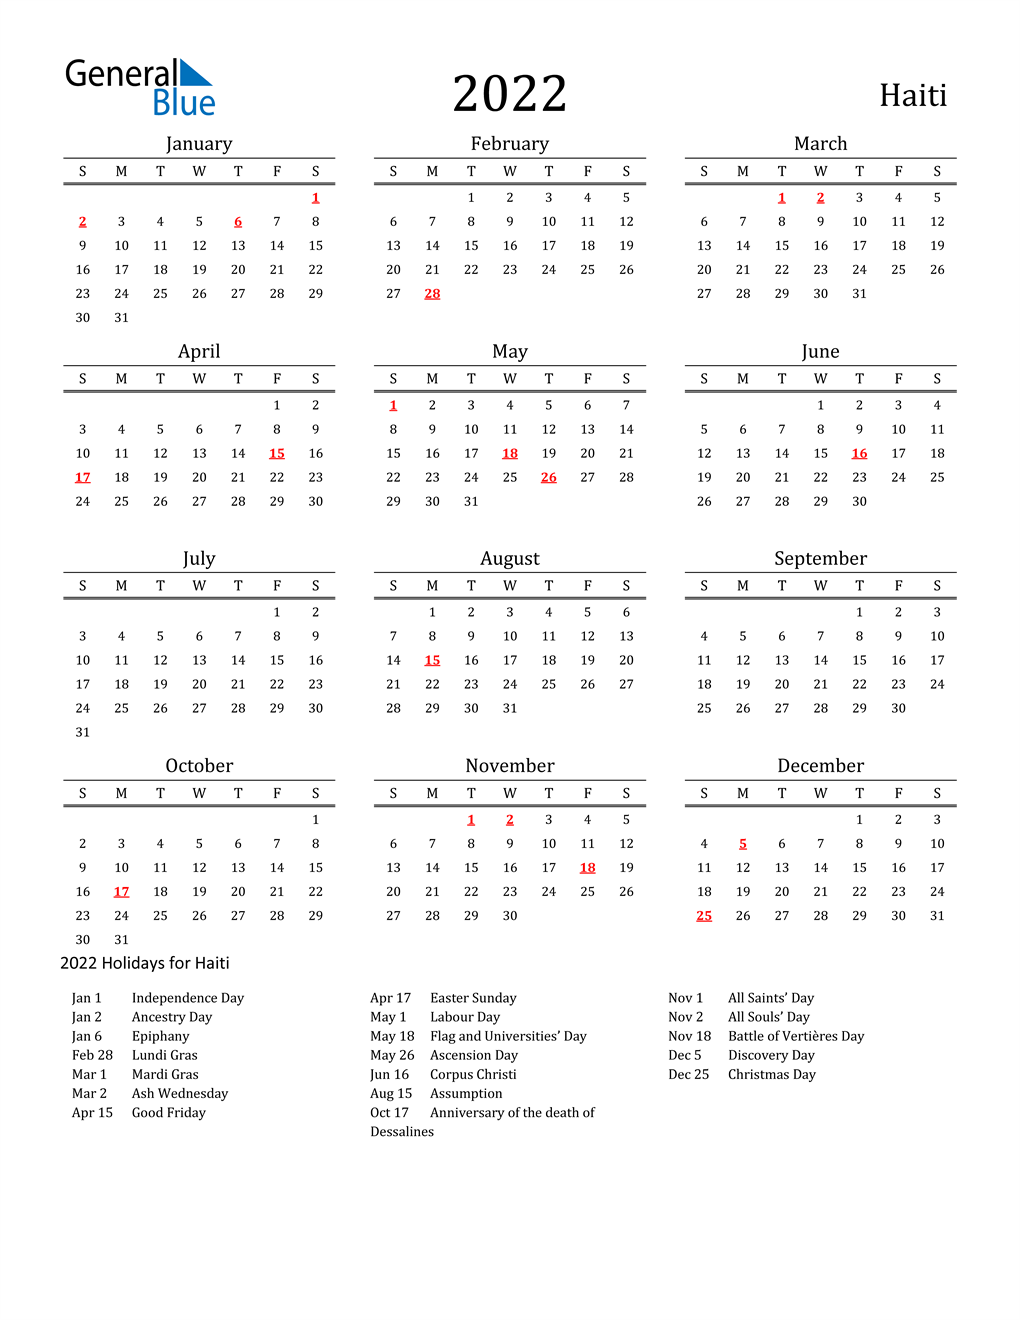 Haiti Holidays Calendar for 2022